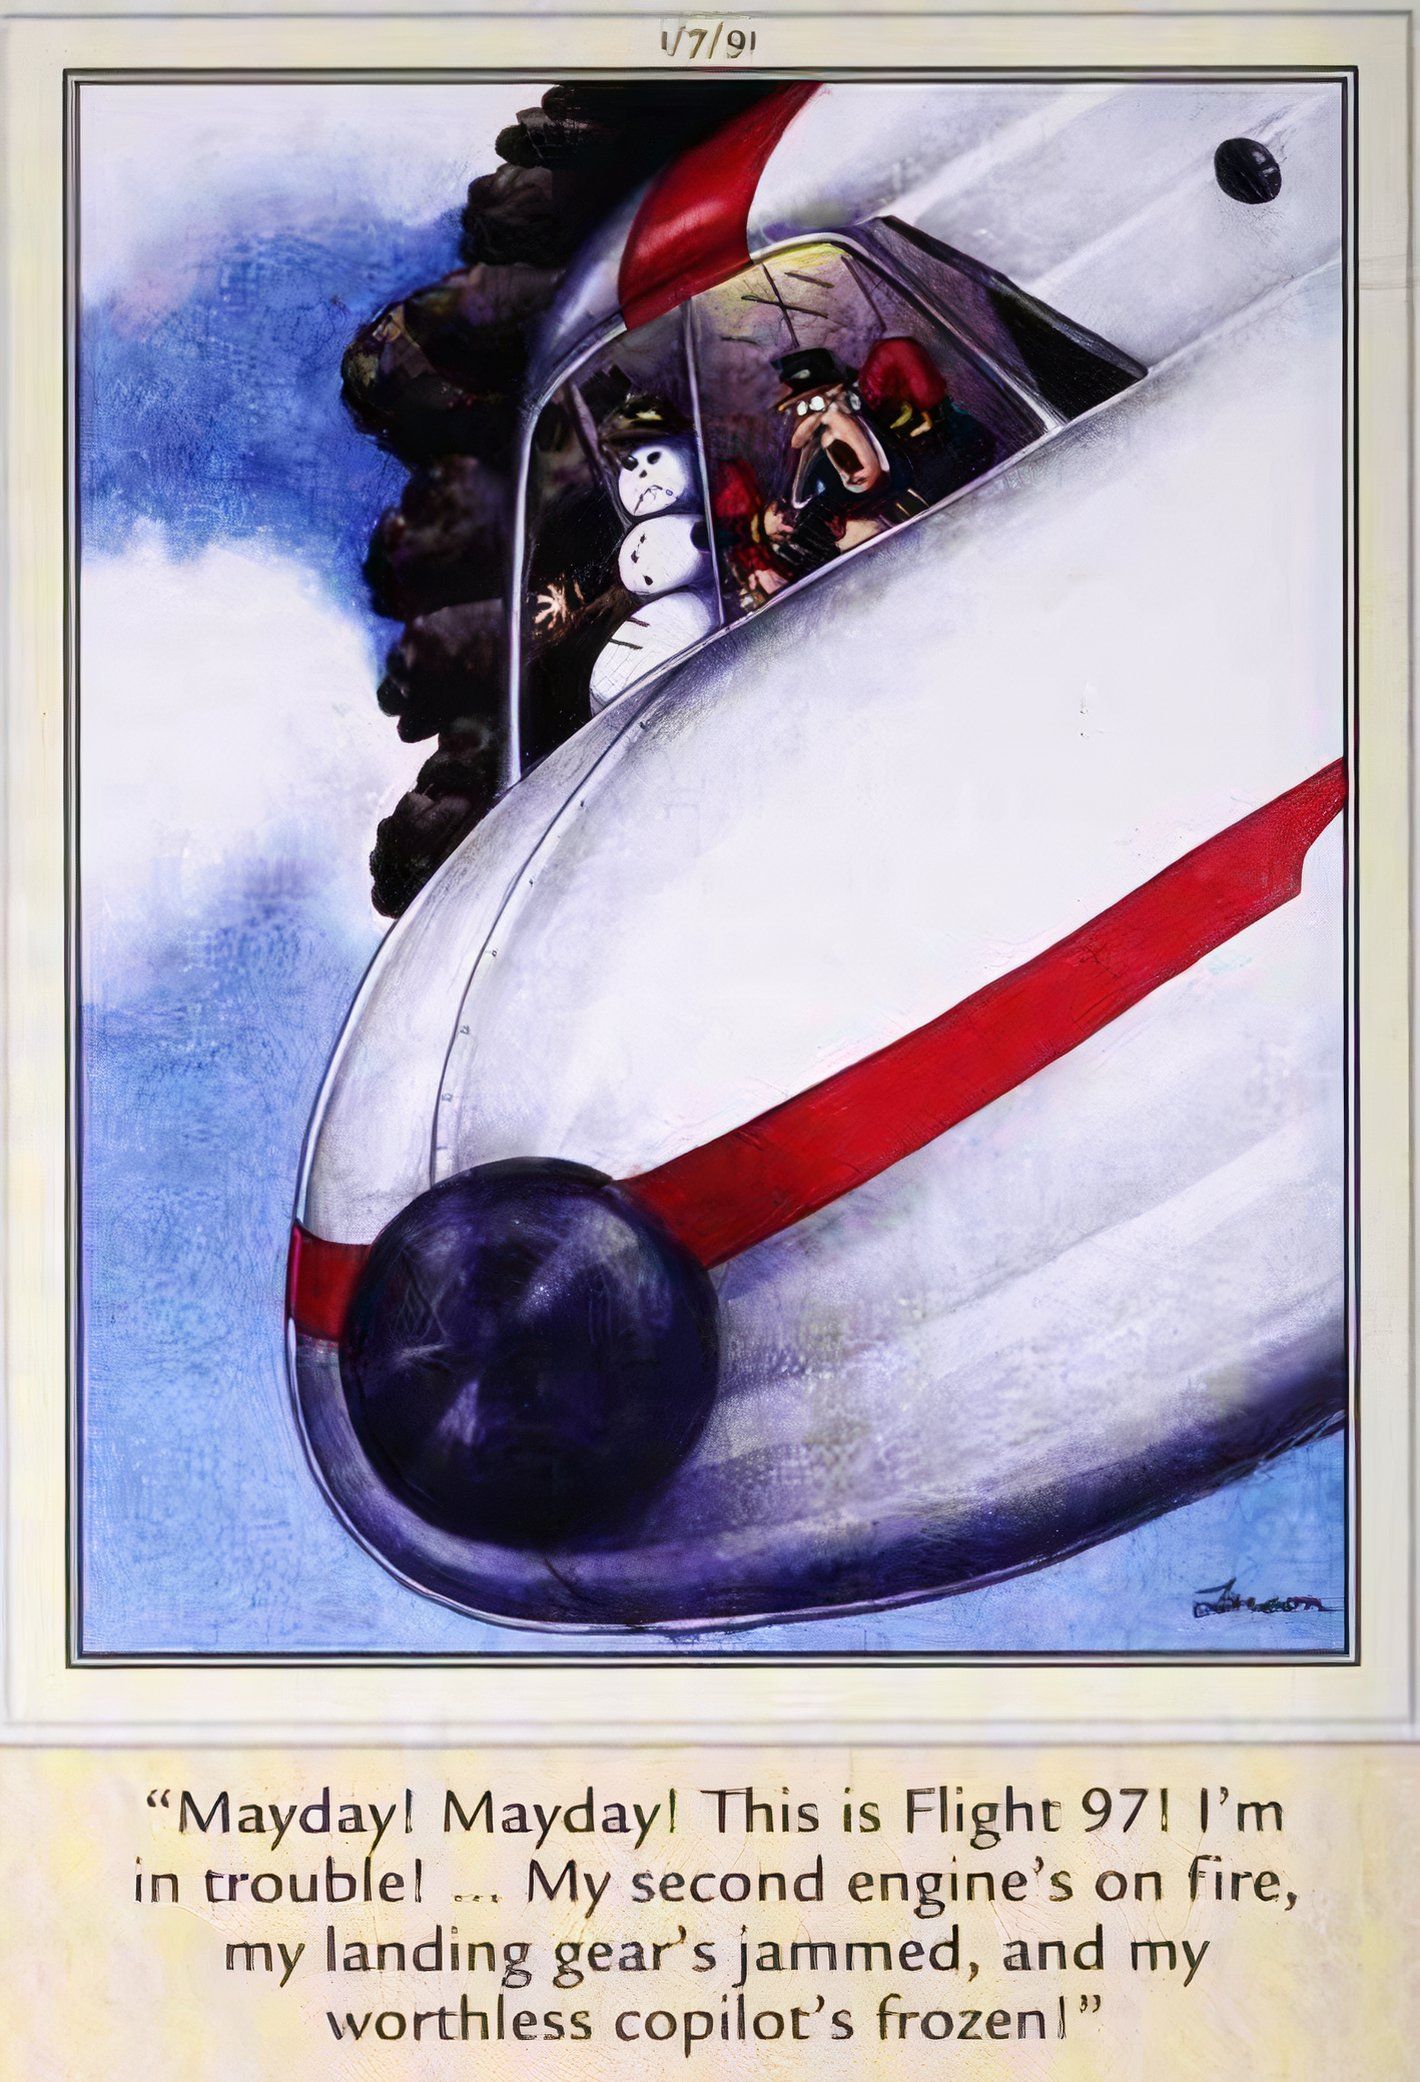 Far Side, 7 de janeiro de 1991, o piloto de um avião que caiu em chamas diz que seu copiloto boneco de neve está congelado